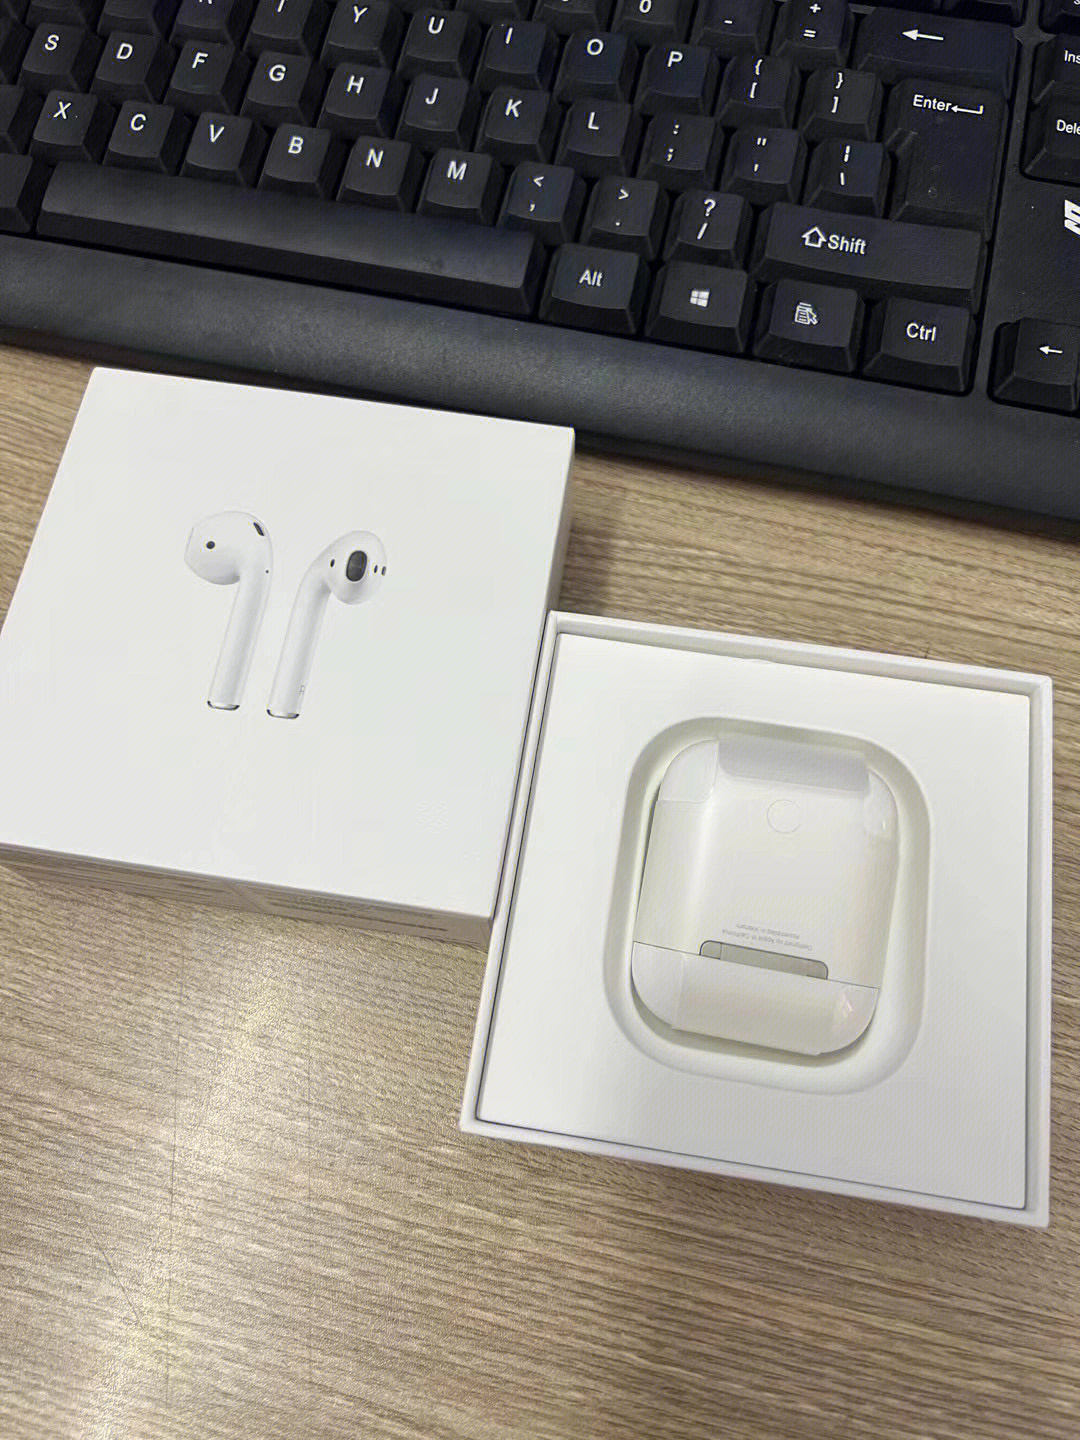 苹果4代耳机包装图片